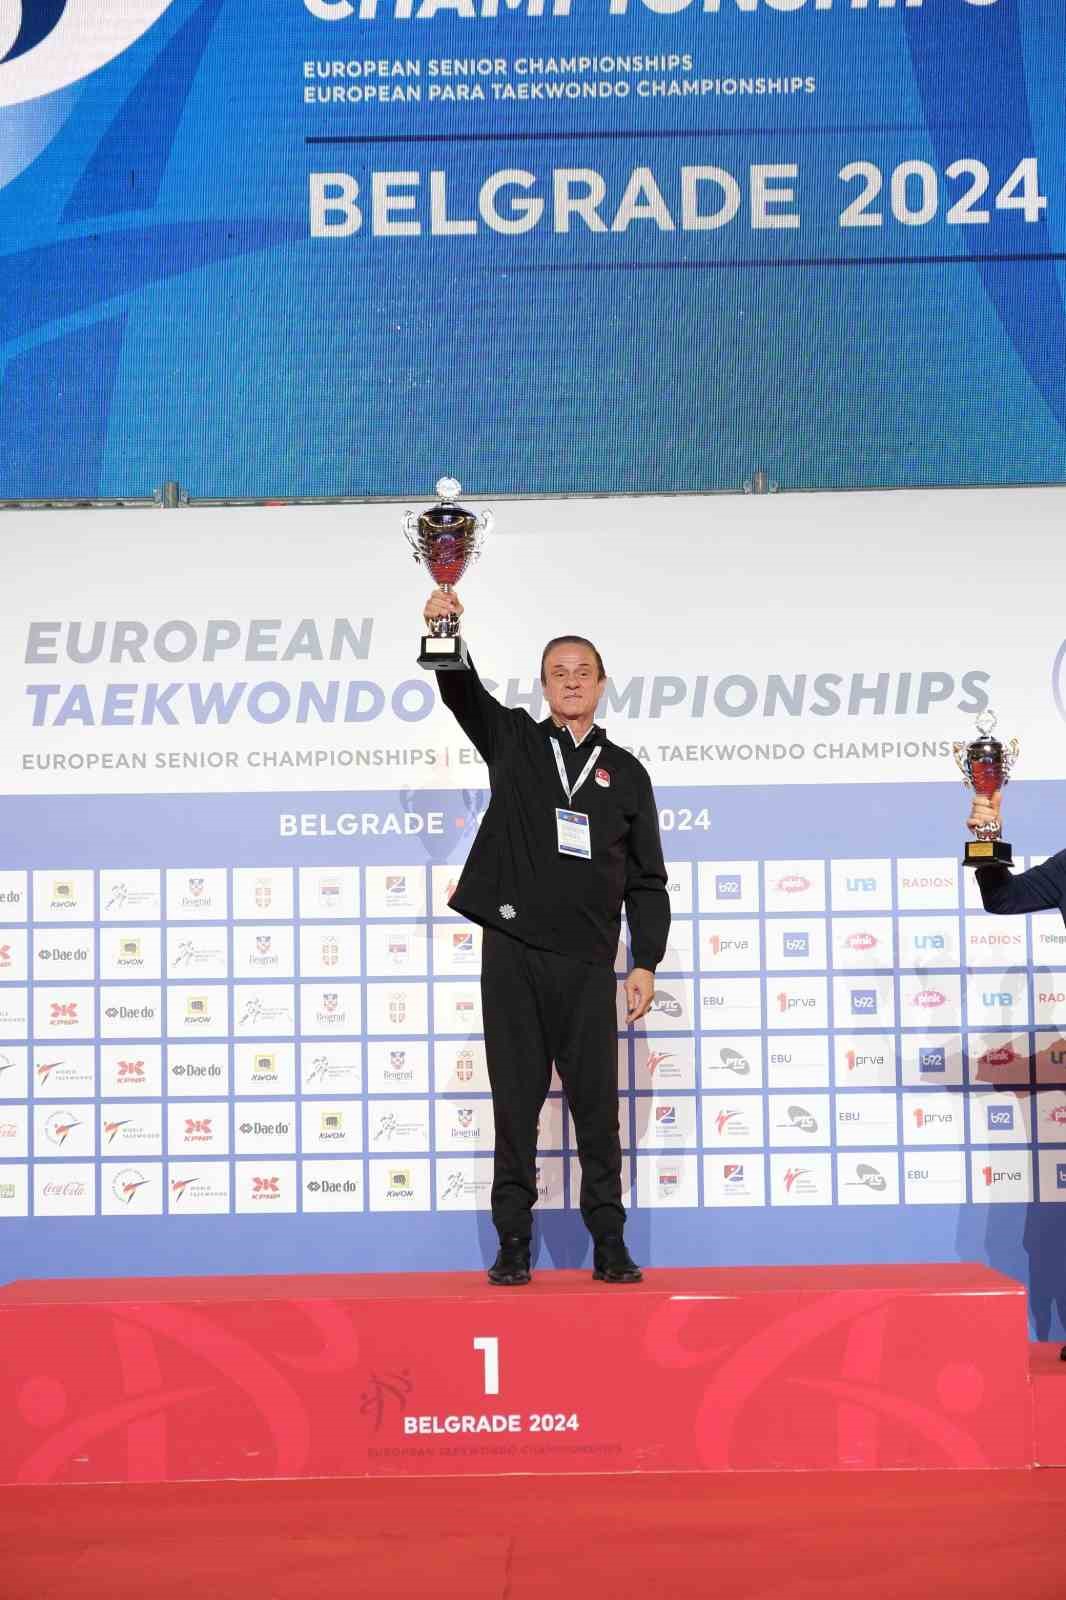 Taekwondoda Türkiye, Avrupa şampiyonu